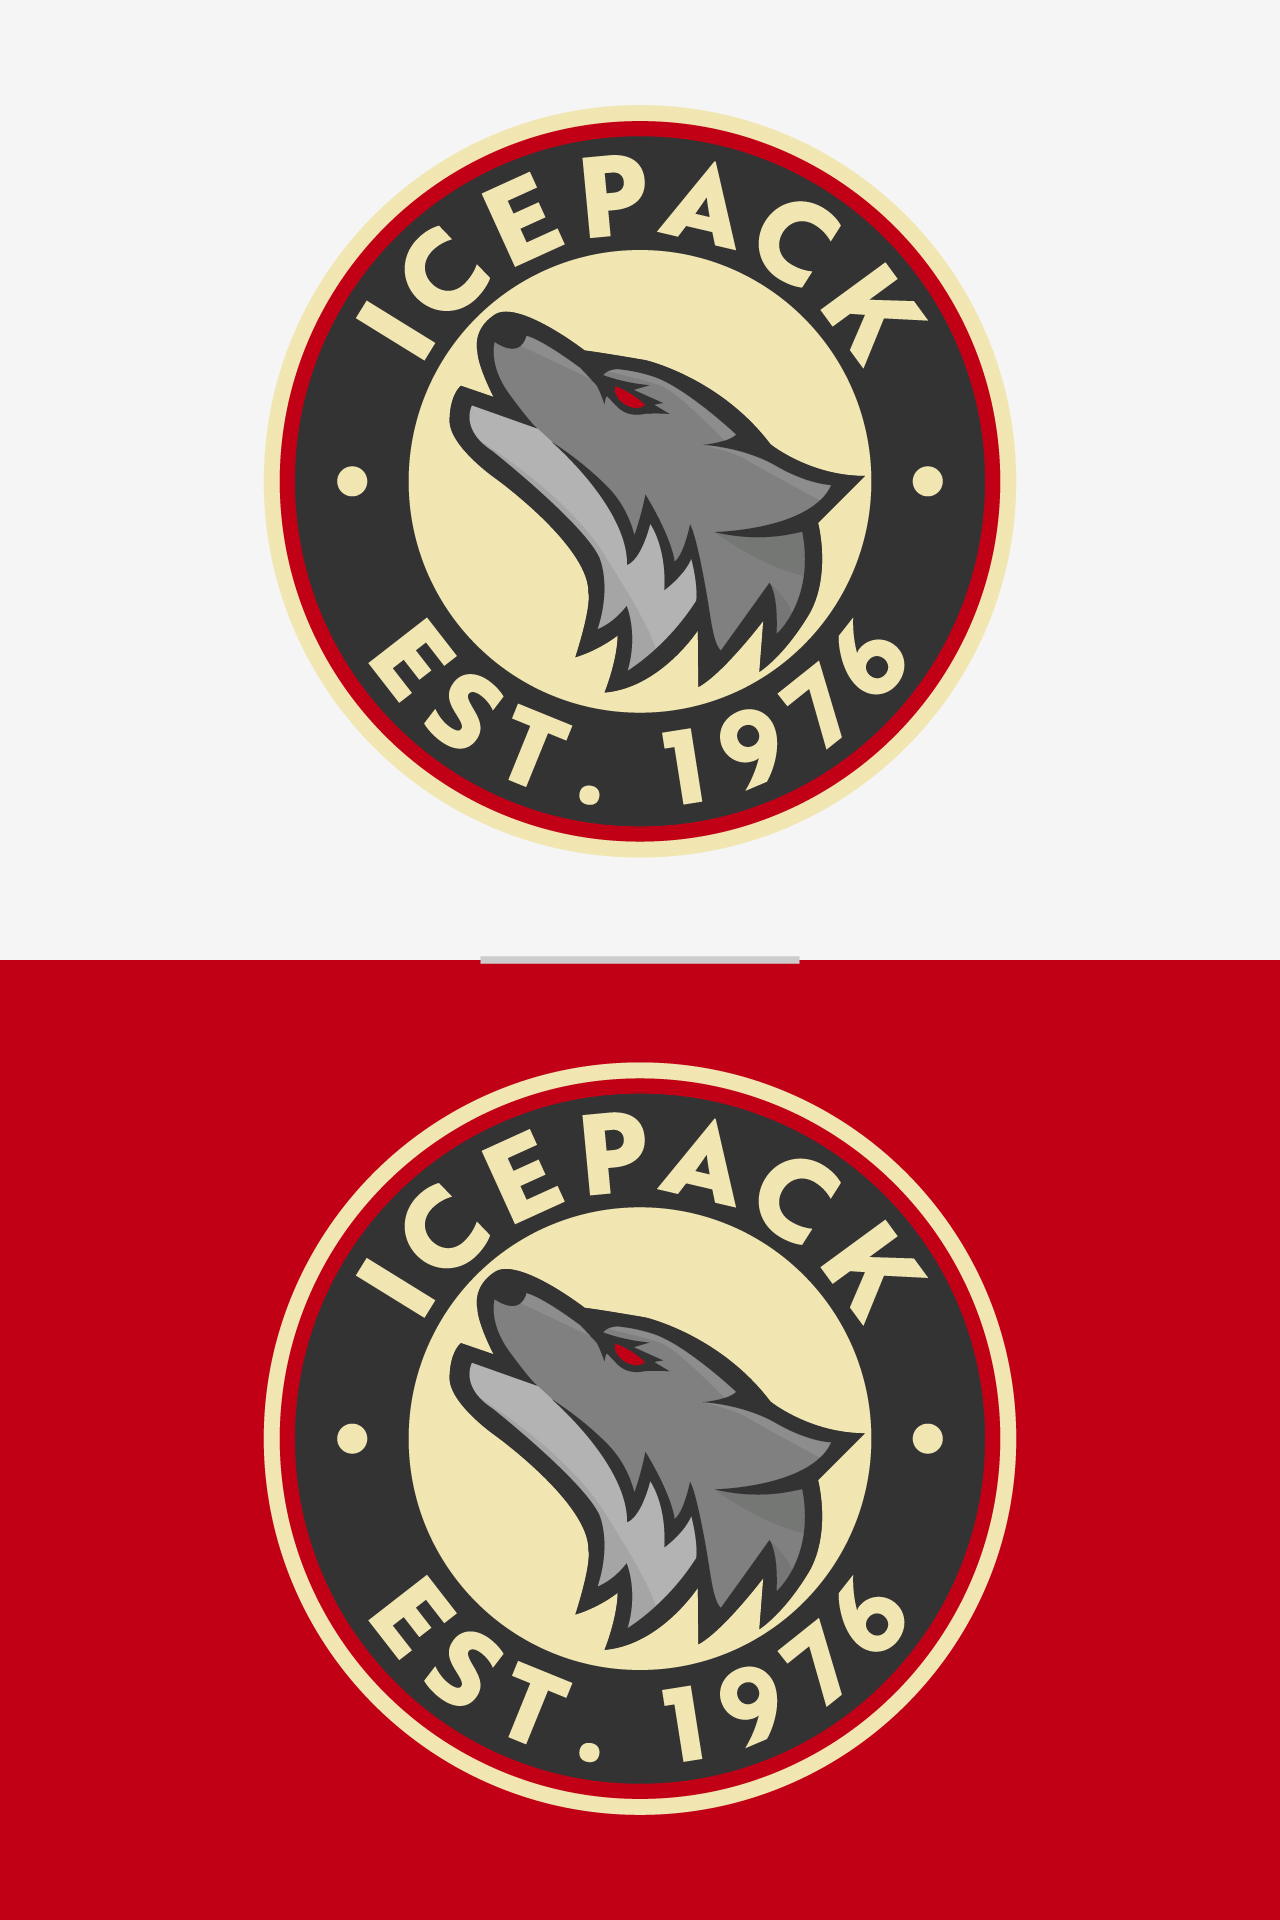 icepack logos